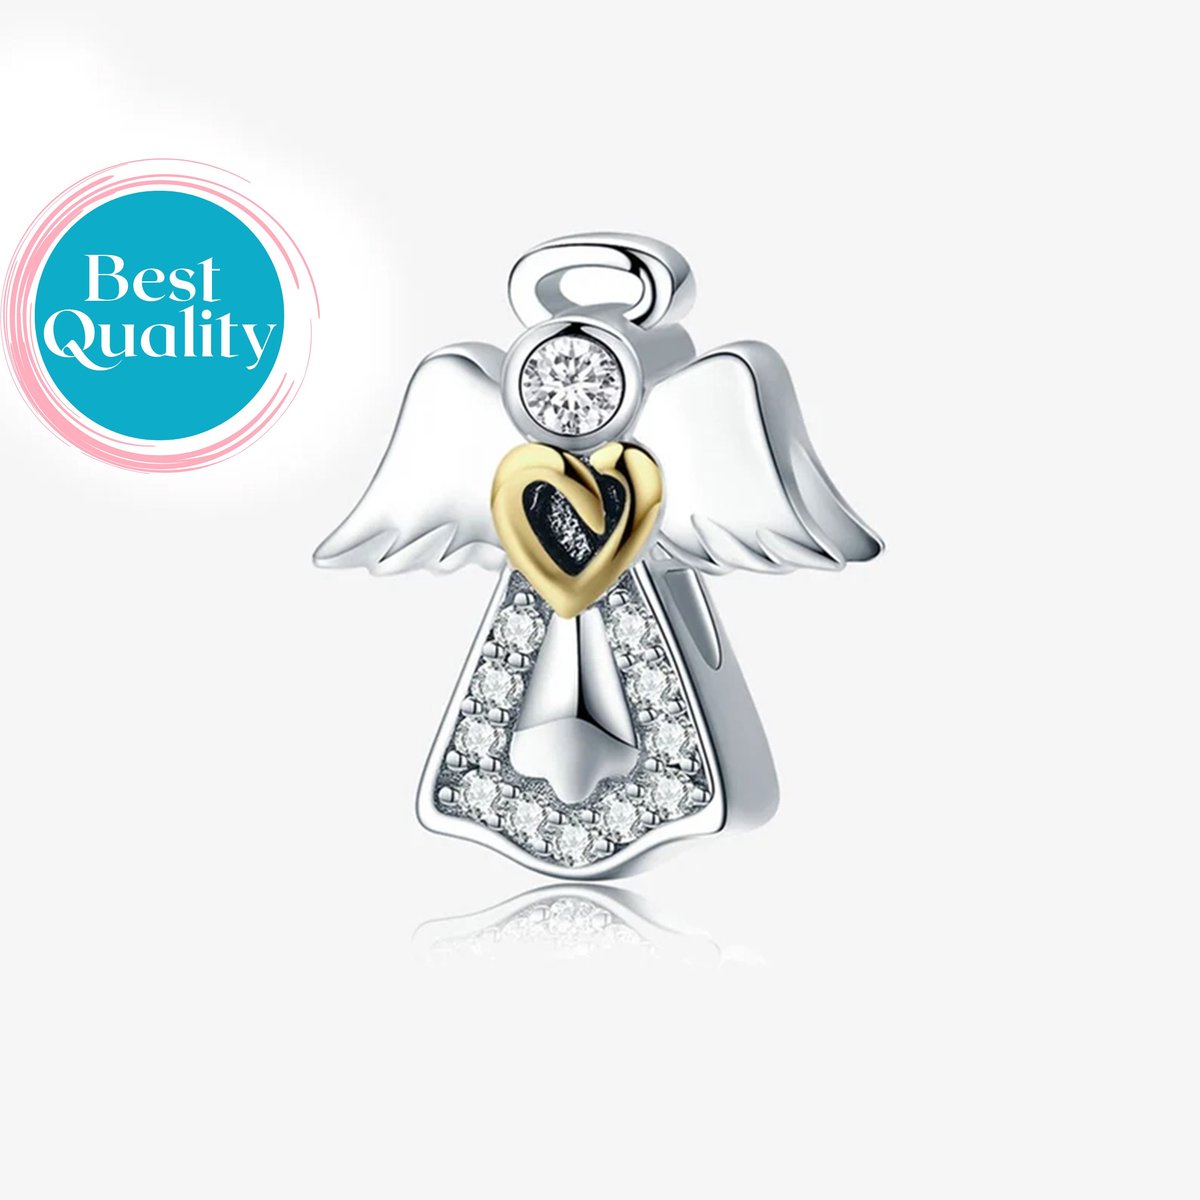 Bescherm Engel Bedel, Guardian Angel Charm 925 Sterling Zilver Bedel Voor Armband - Keen Jewel